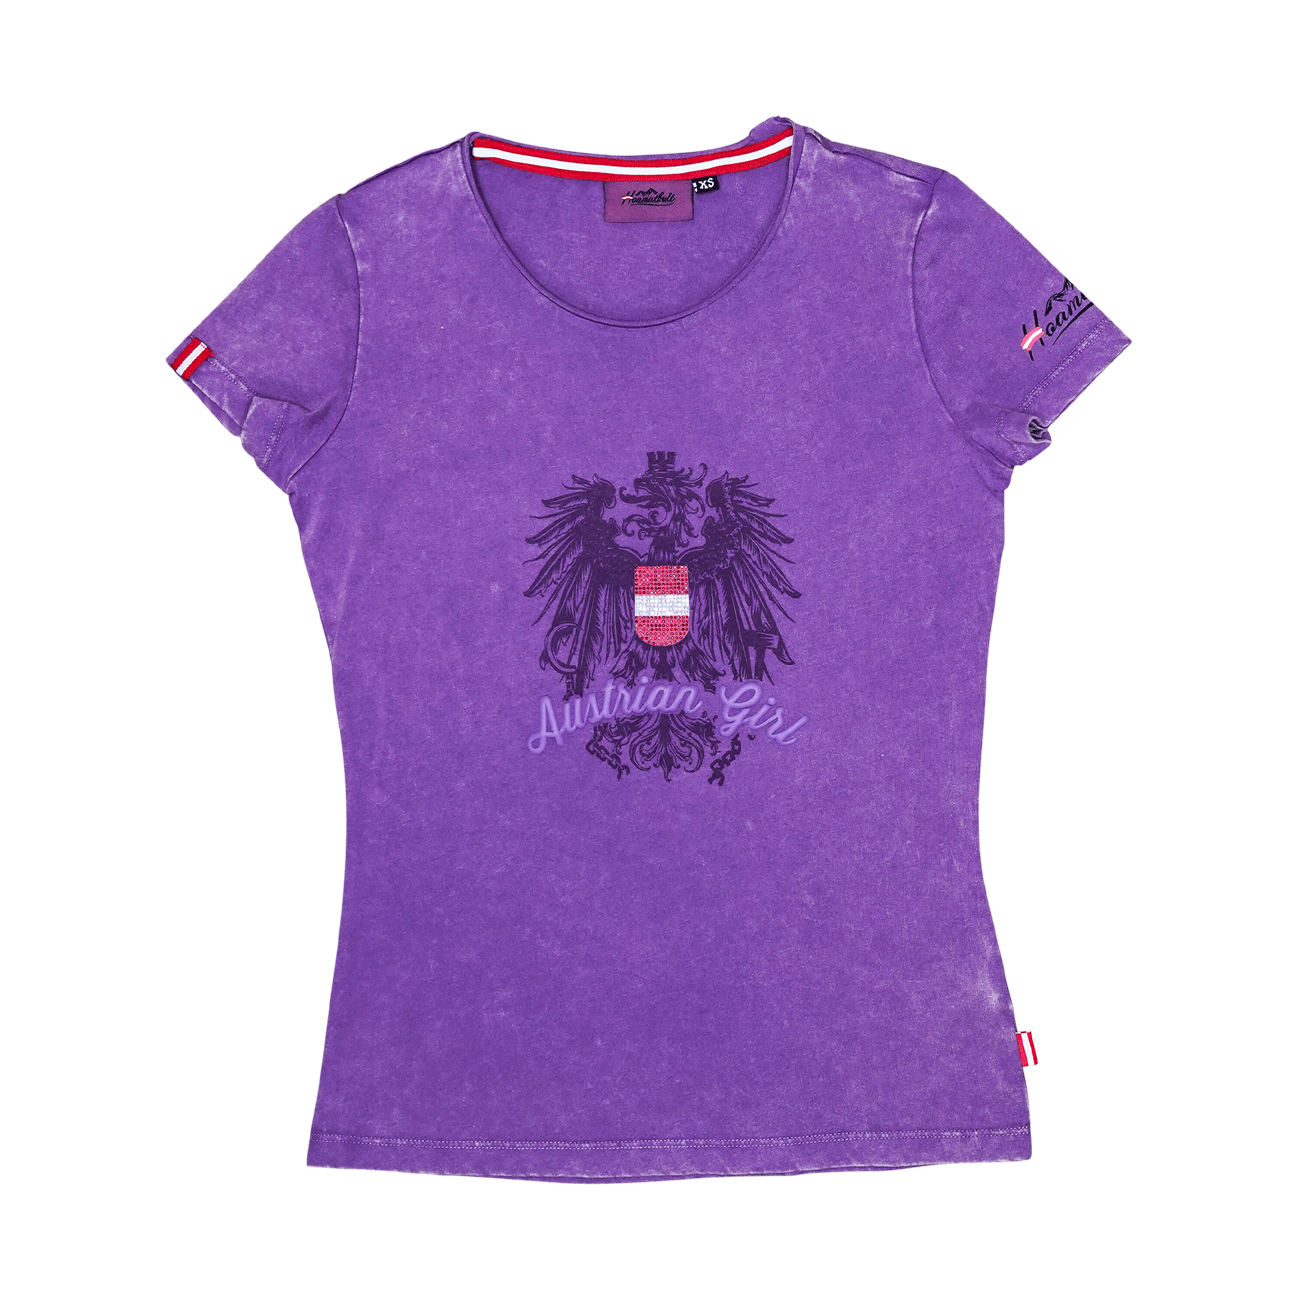 Lila Austrian Girl T-Shirt